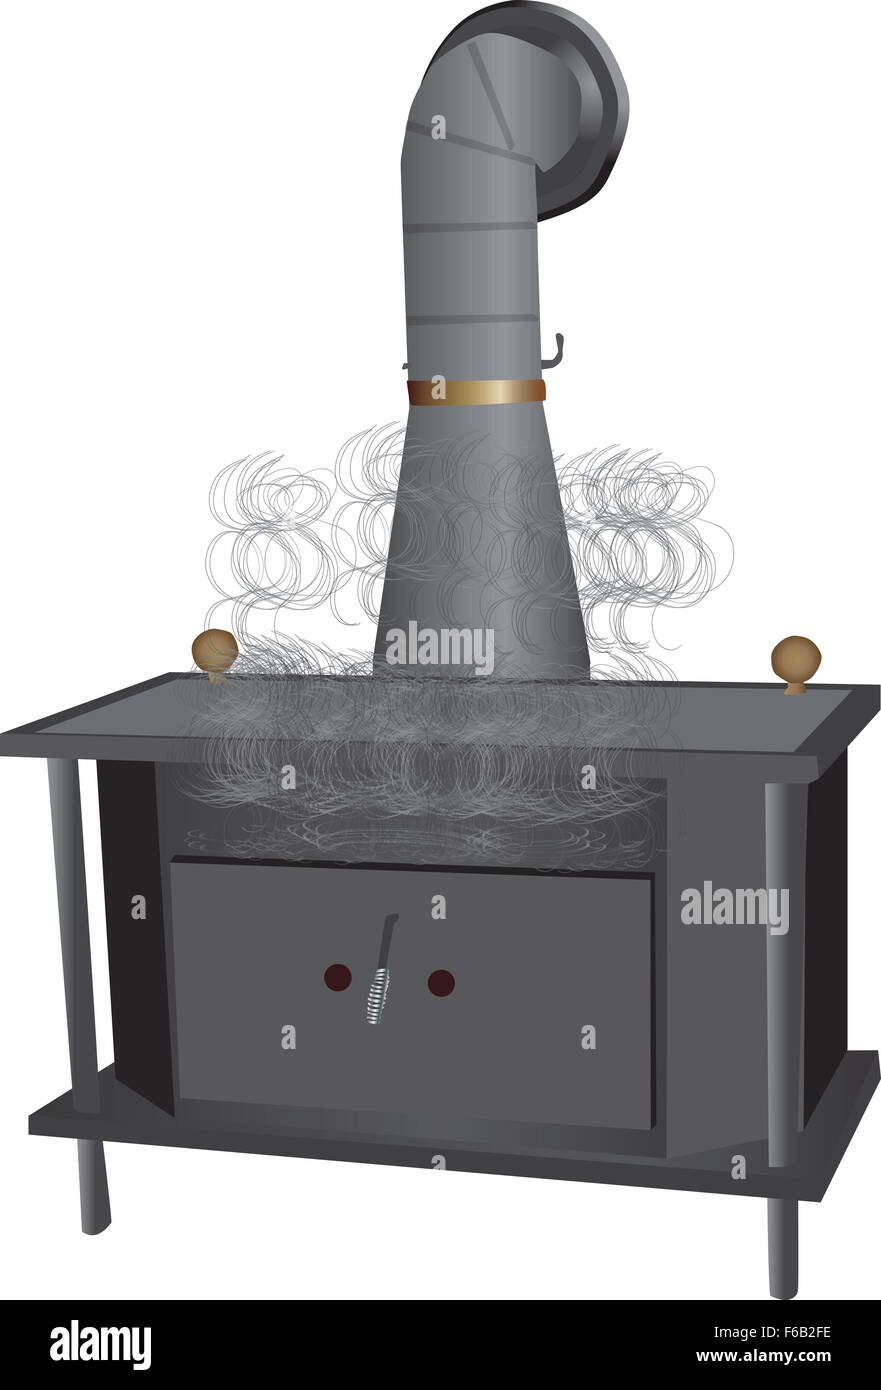 smoking wood burning stove Stock Photo